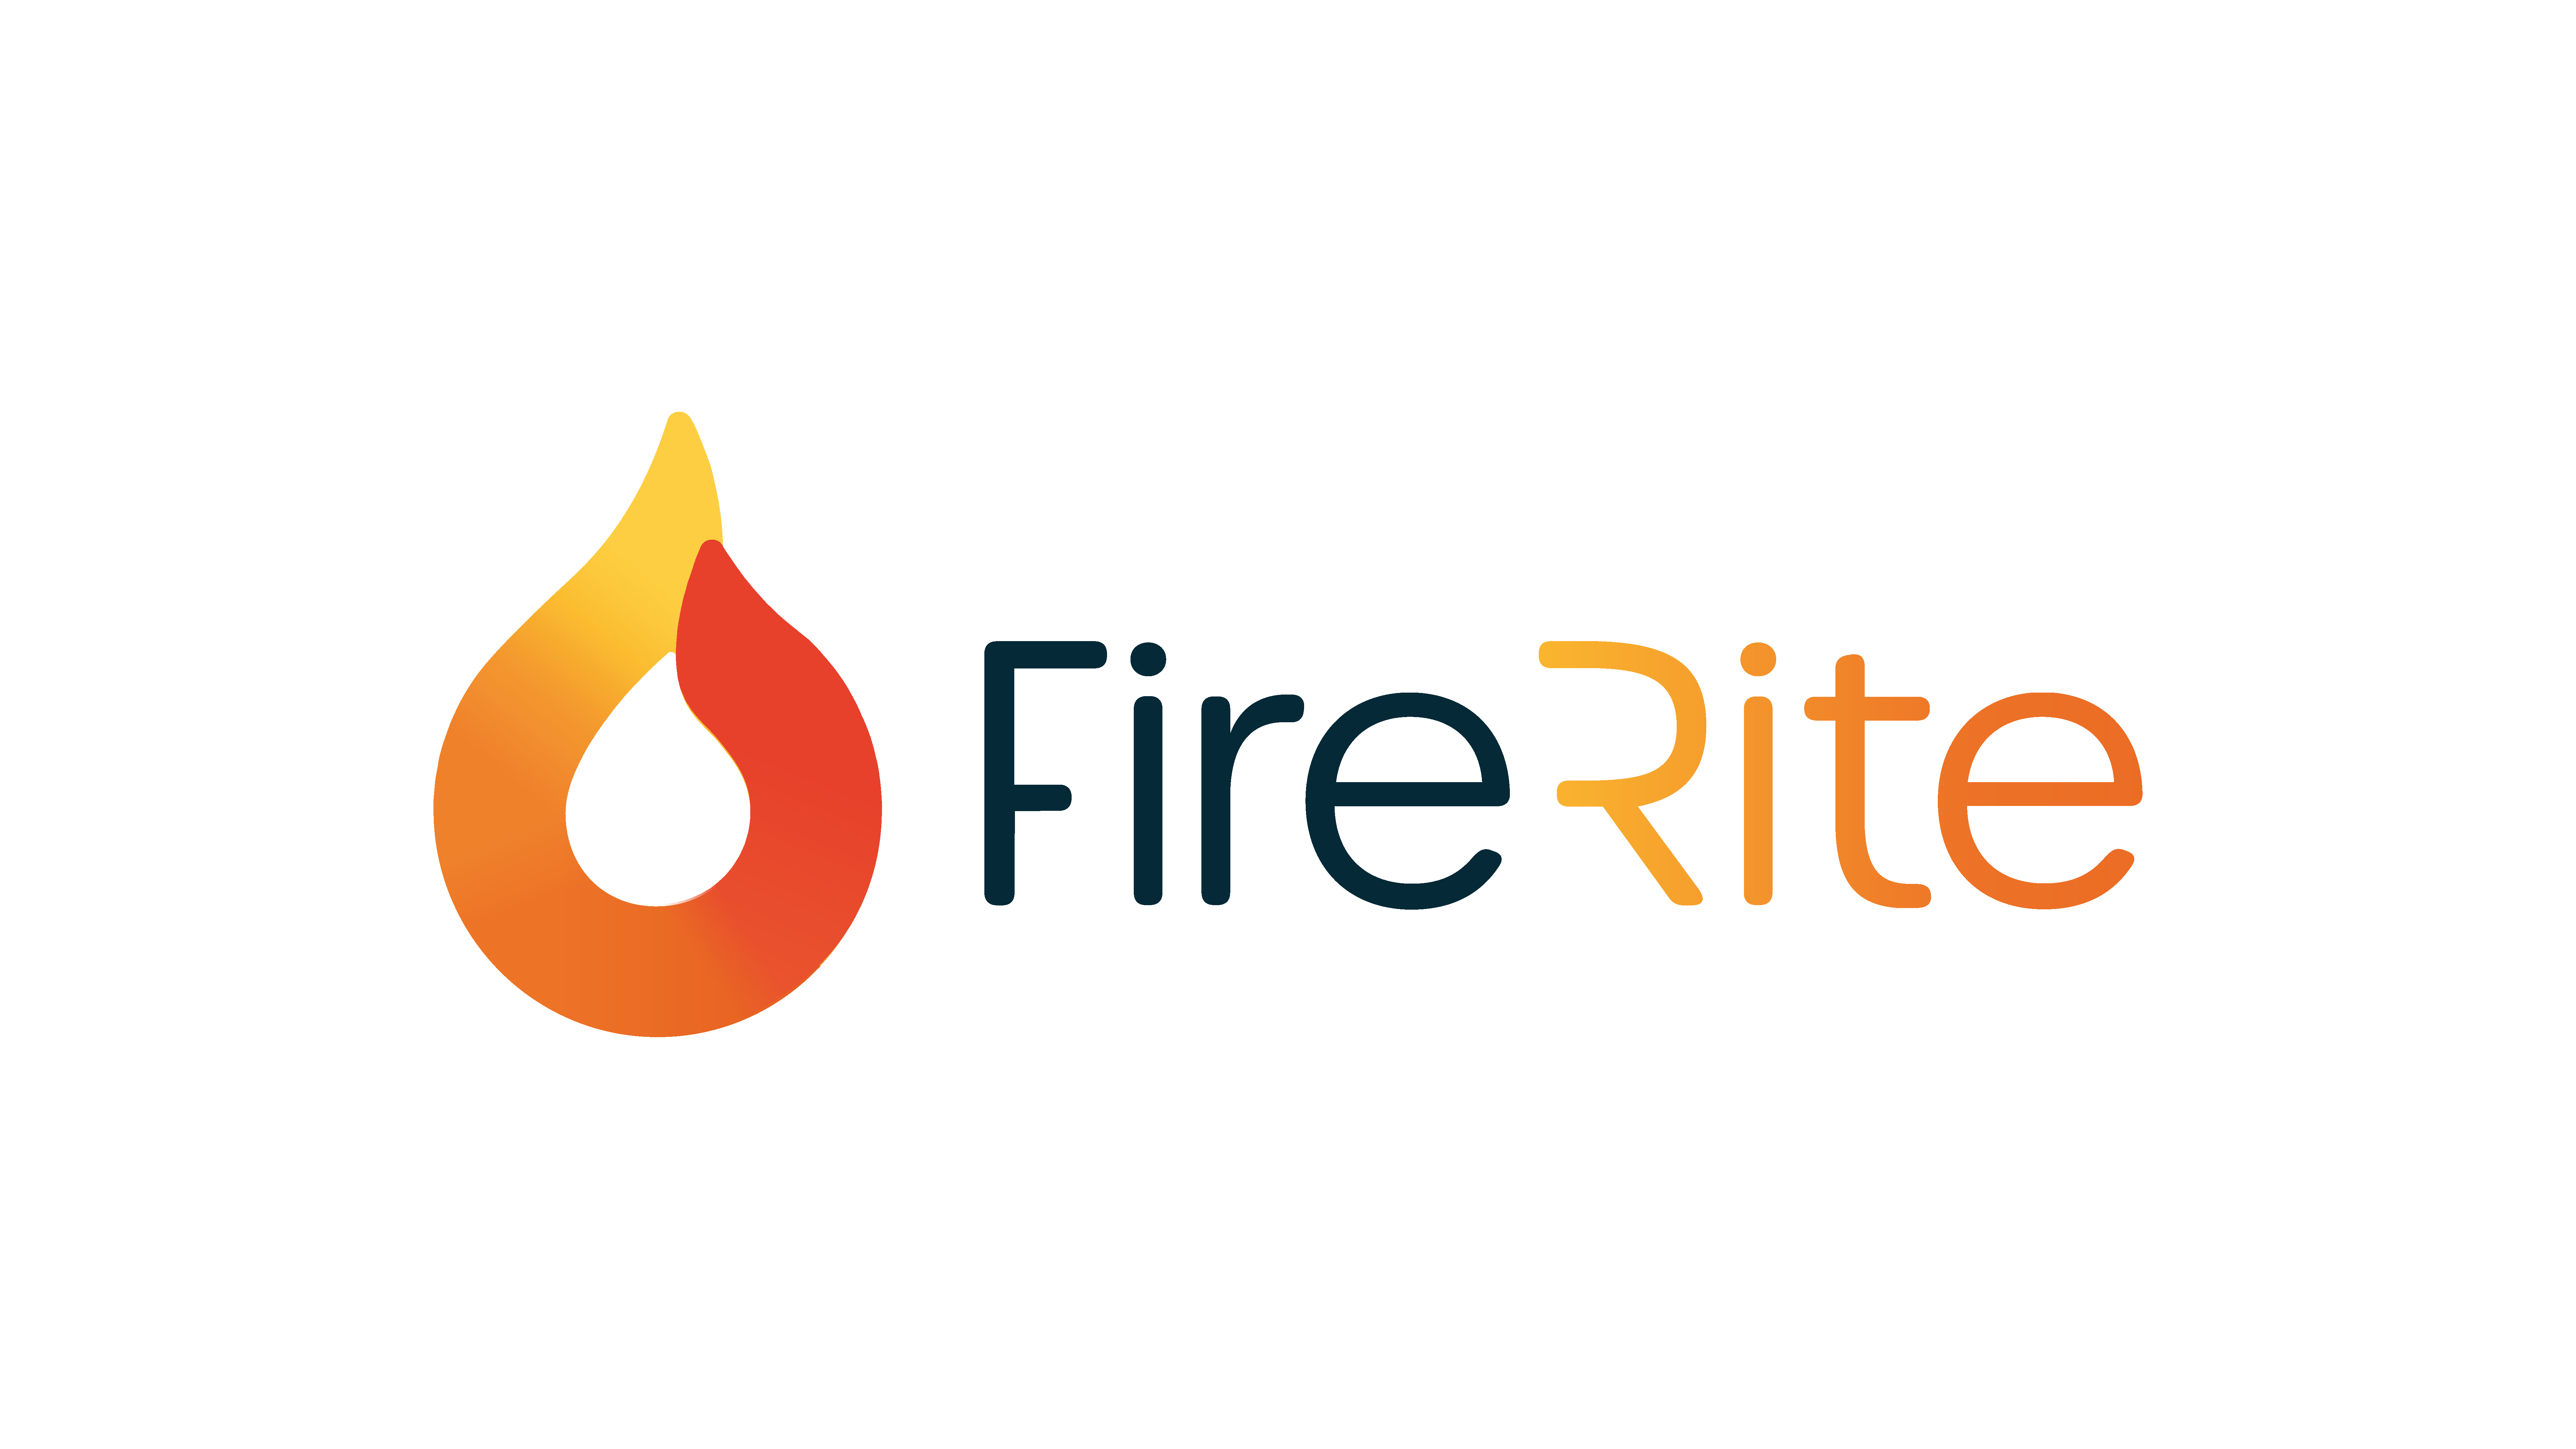 FireRite